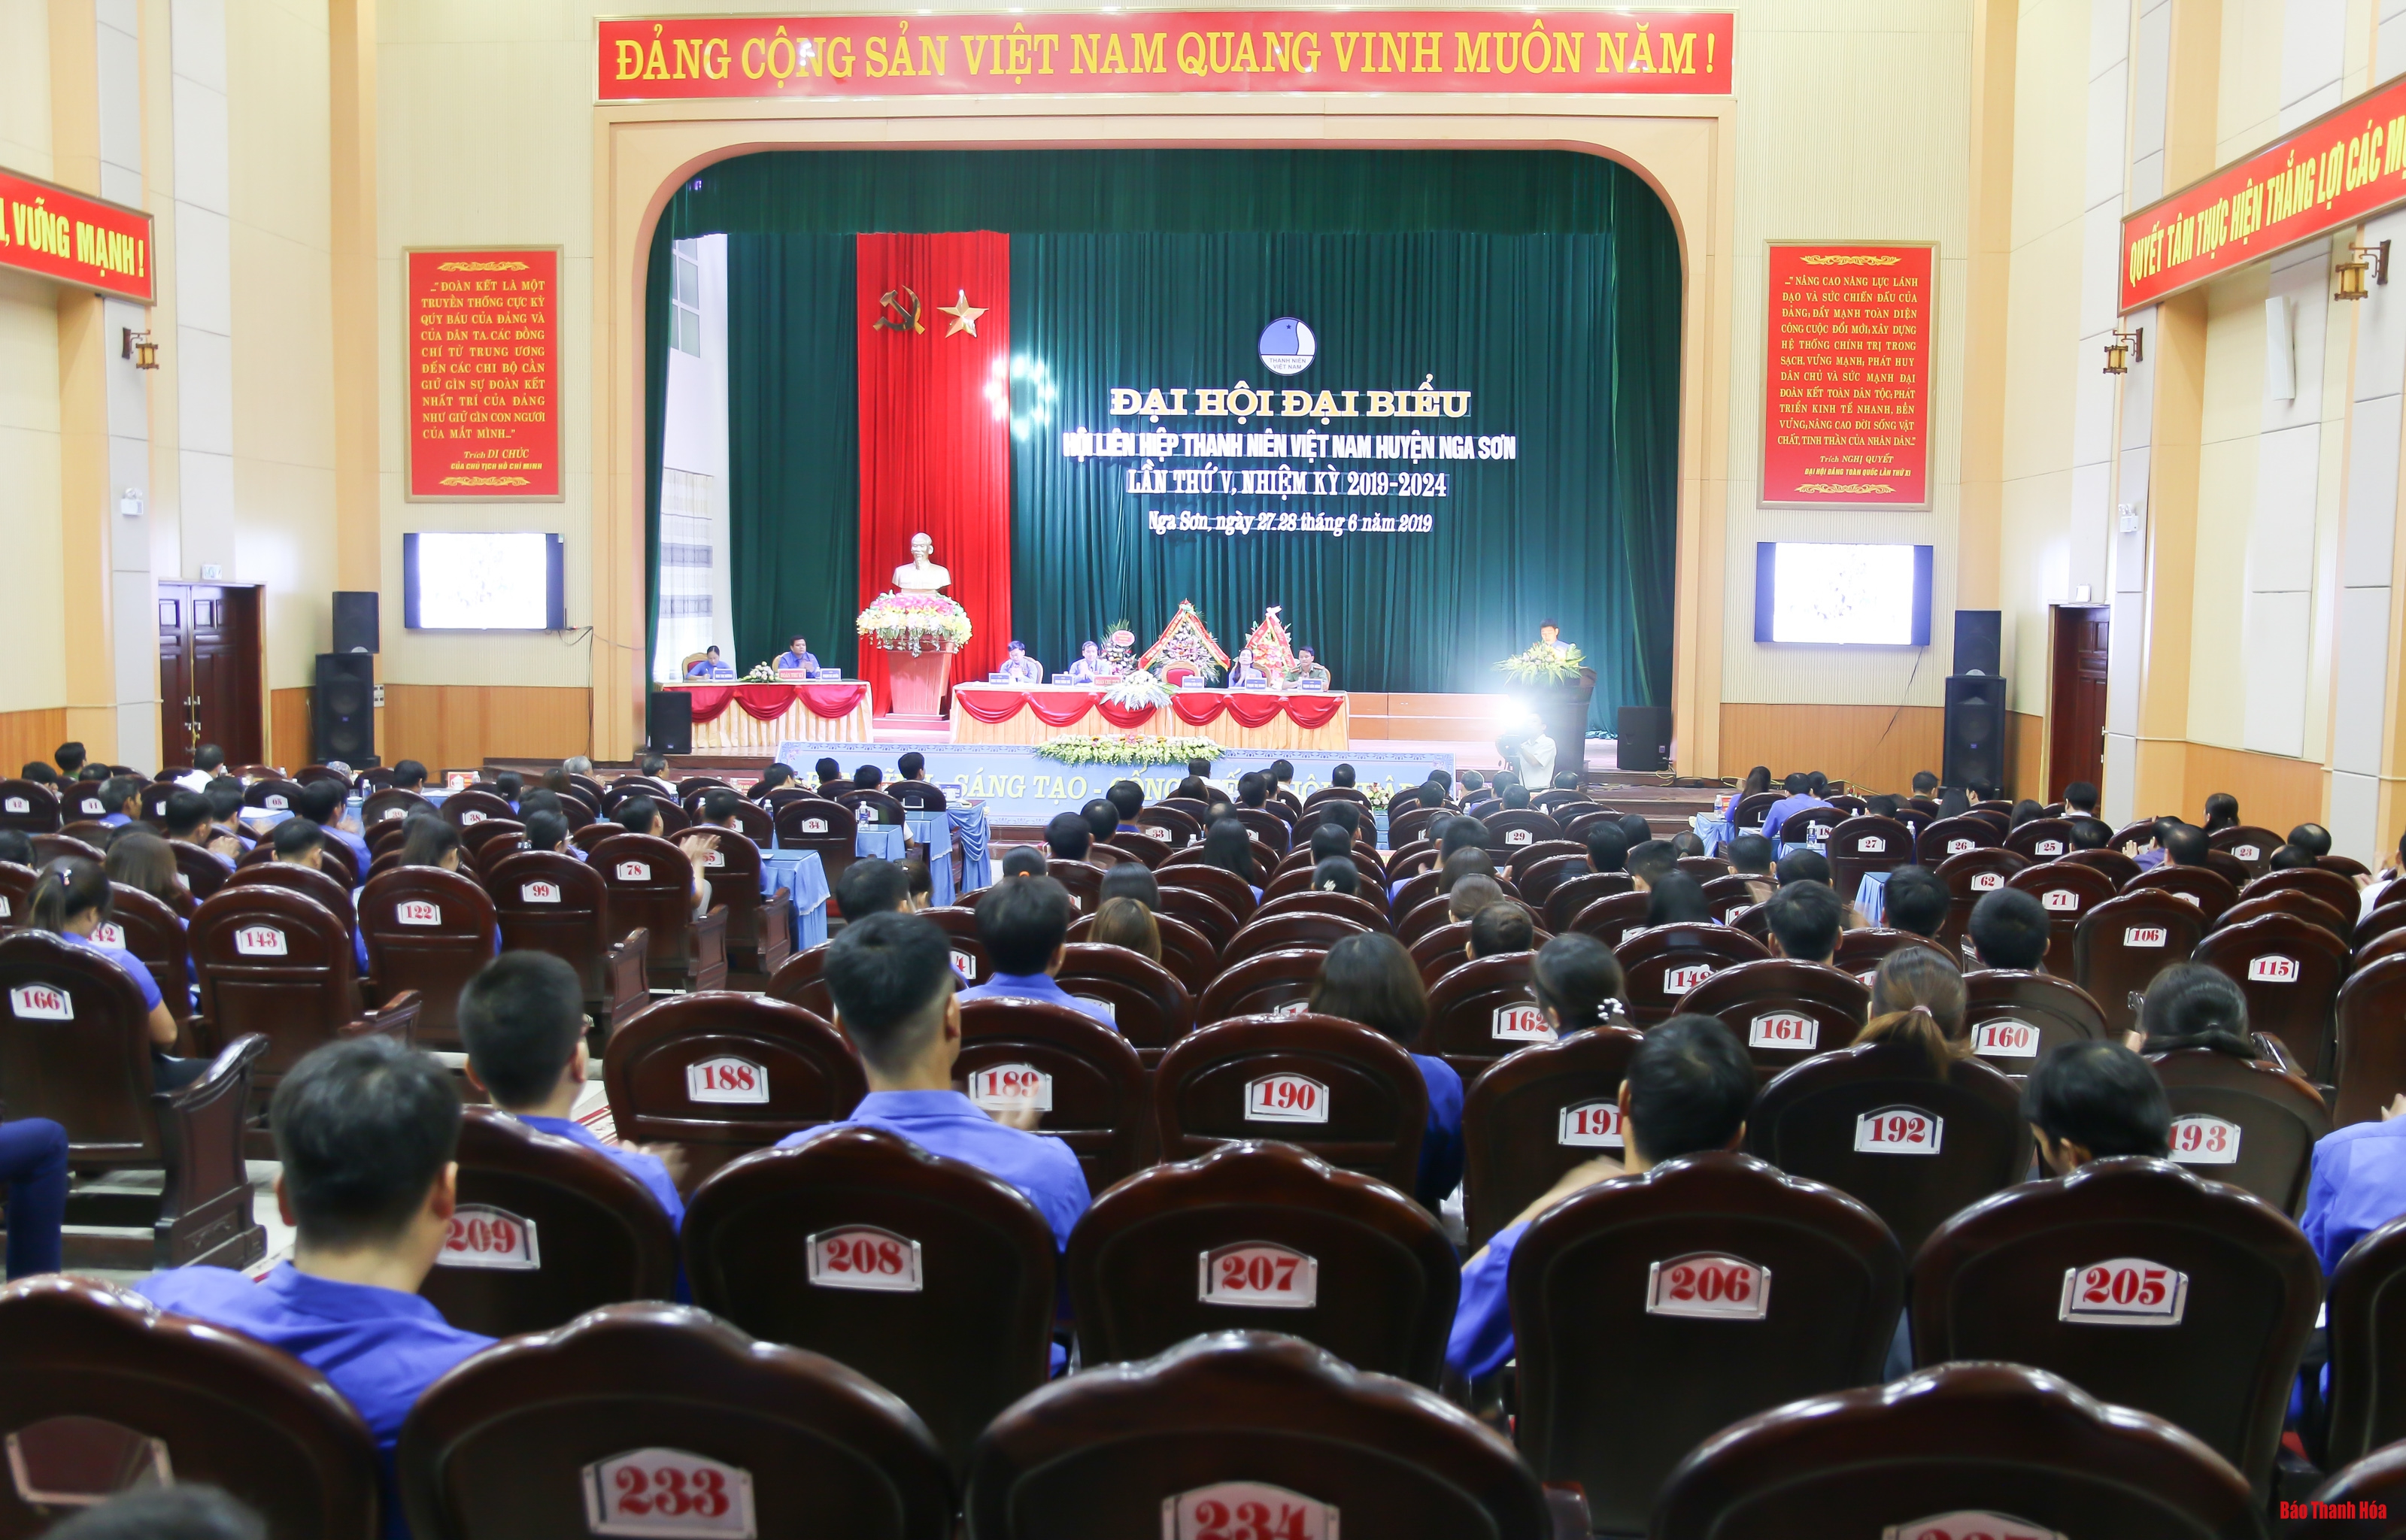 Đại hội đại biểu Hội Liên hiệp Thanh niên Việt Nam huyện Nga Sơn nhiệm kỳ 2019 - 2024